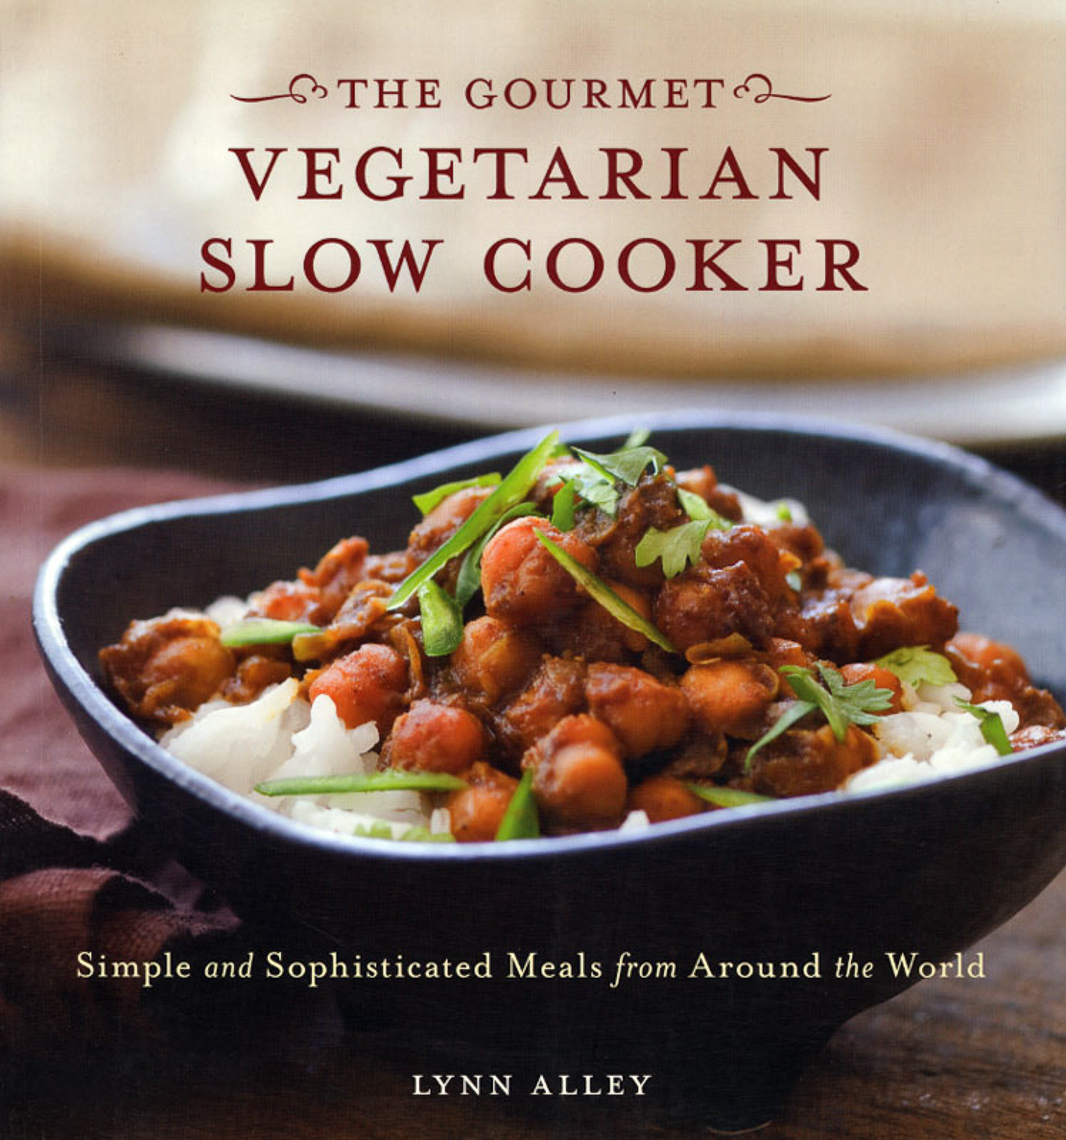 The Gourmet Vegetarian Slow Cooker